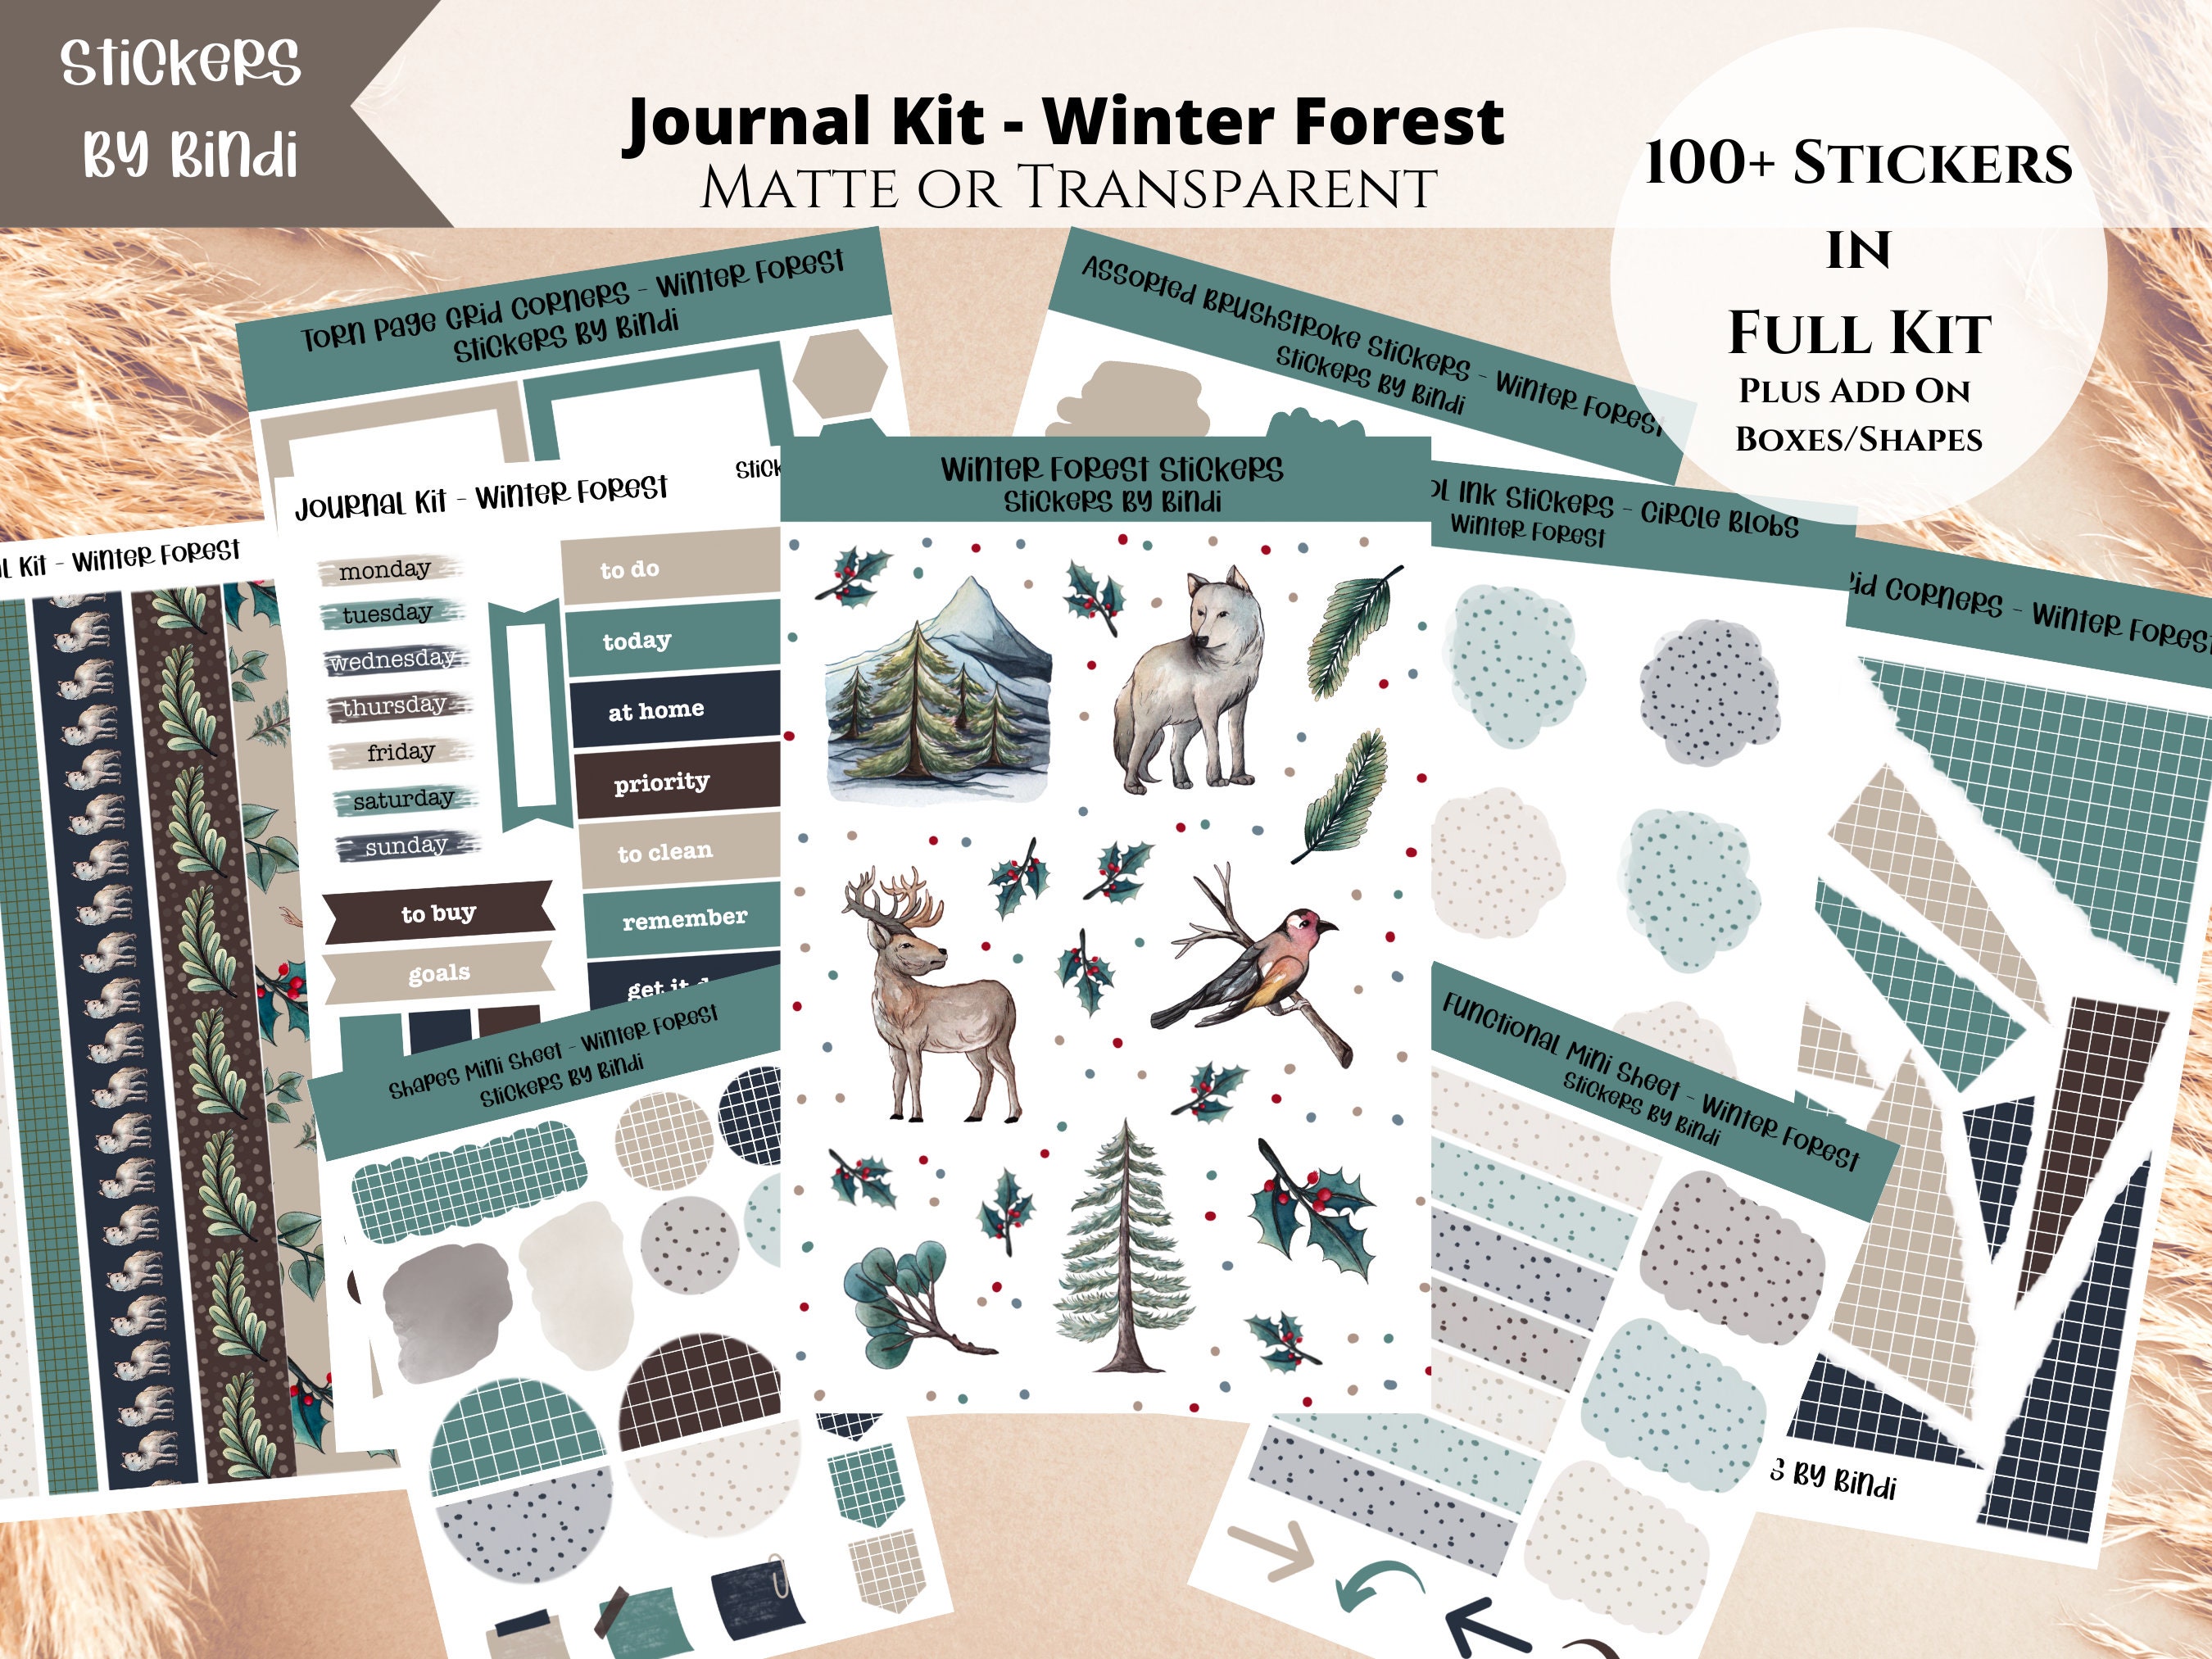 Vintage Inspired Forest Animals Planner Stickers, Tiny Animal Stickers,  Forest Animal Scrapbooking Stickers, Animal Ephemera. VT-138.